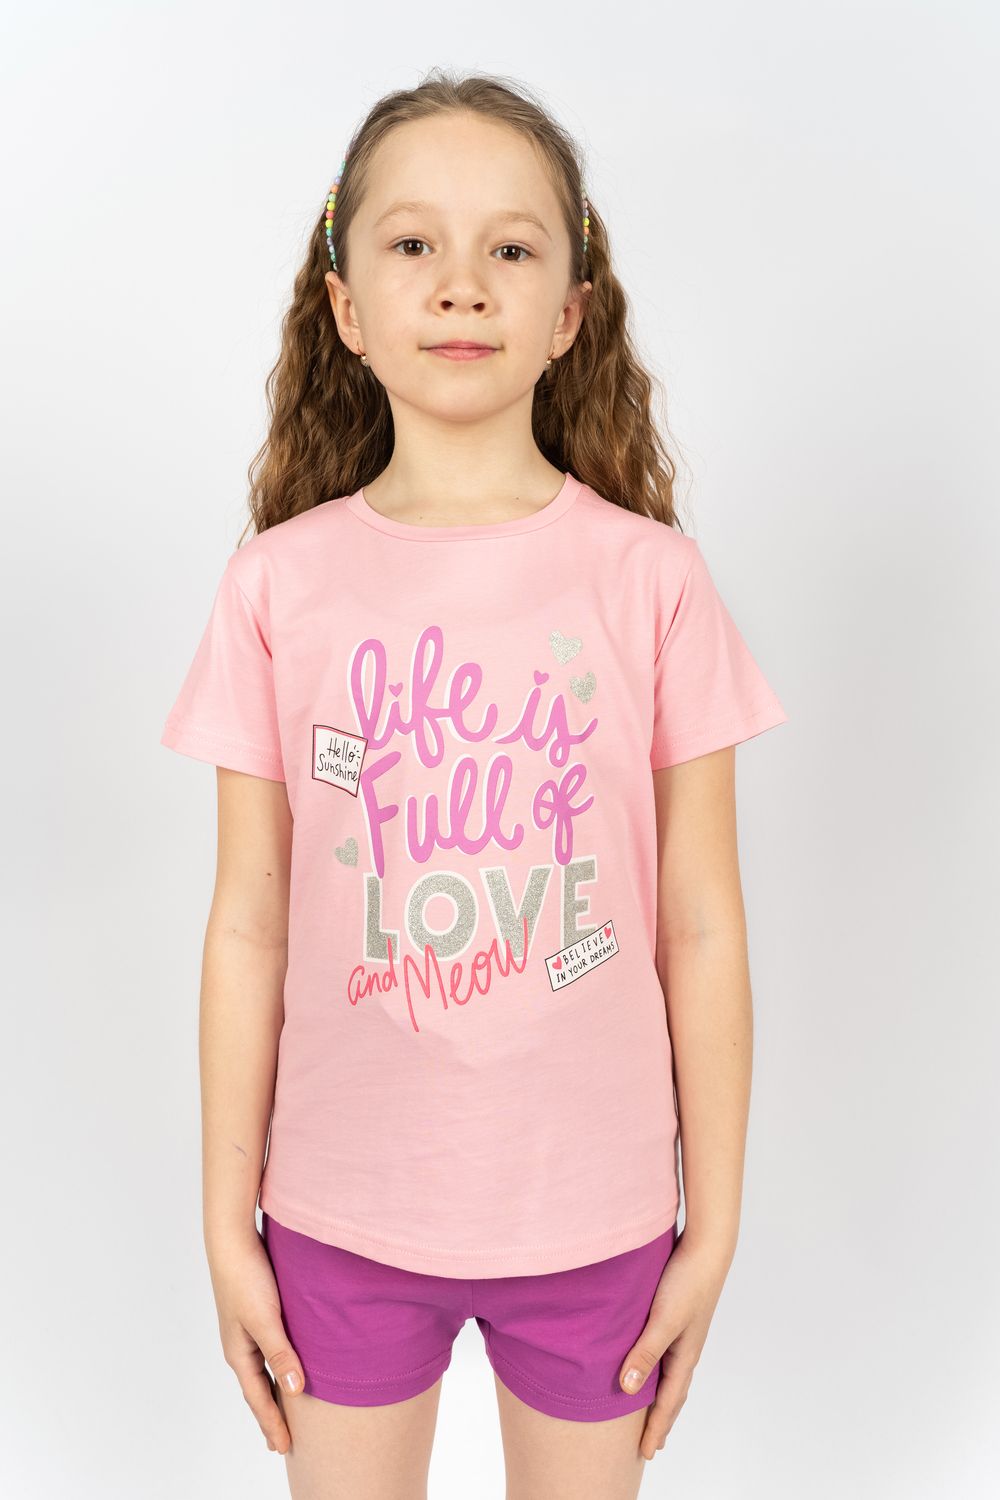 Комплект для девочки 41107 (футболка+ шорты) - с.розовый/лиловый